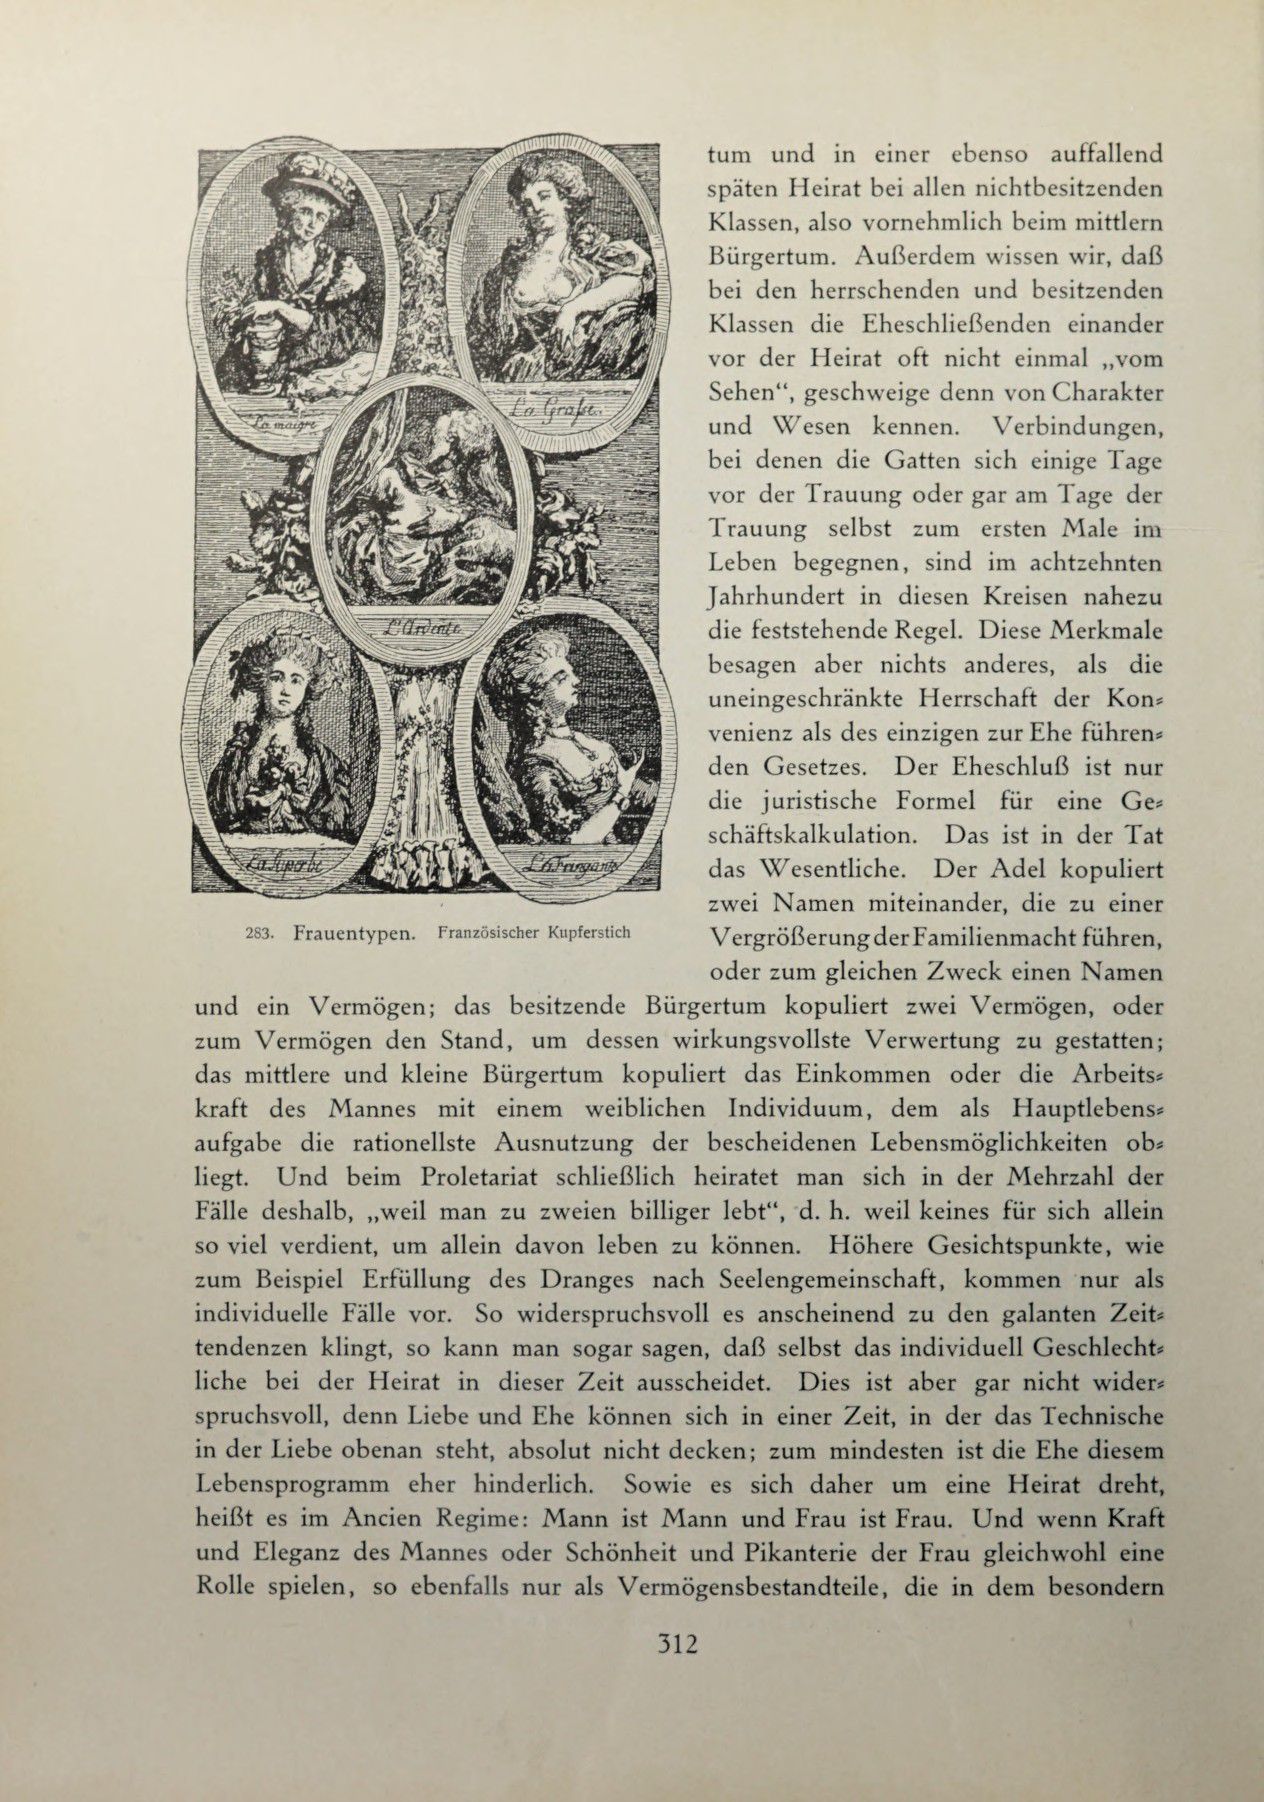 [Eduard Fuchs] Illustrierte Sittengeschichte vom Mittelalter bis zur Gegenwart: Bd. 2. and Ergänzungsband. Die galante Zeit [German] 453